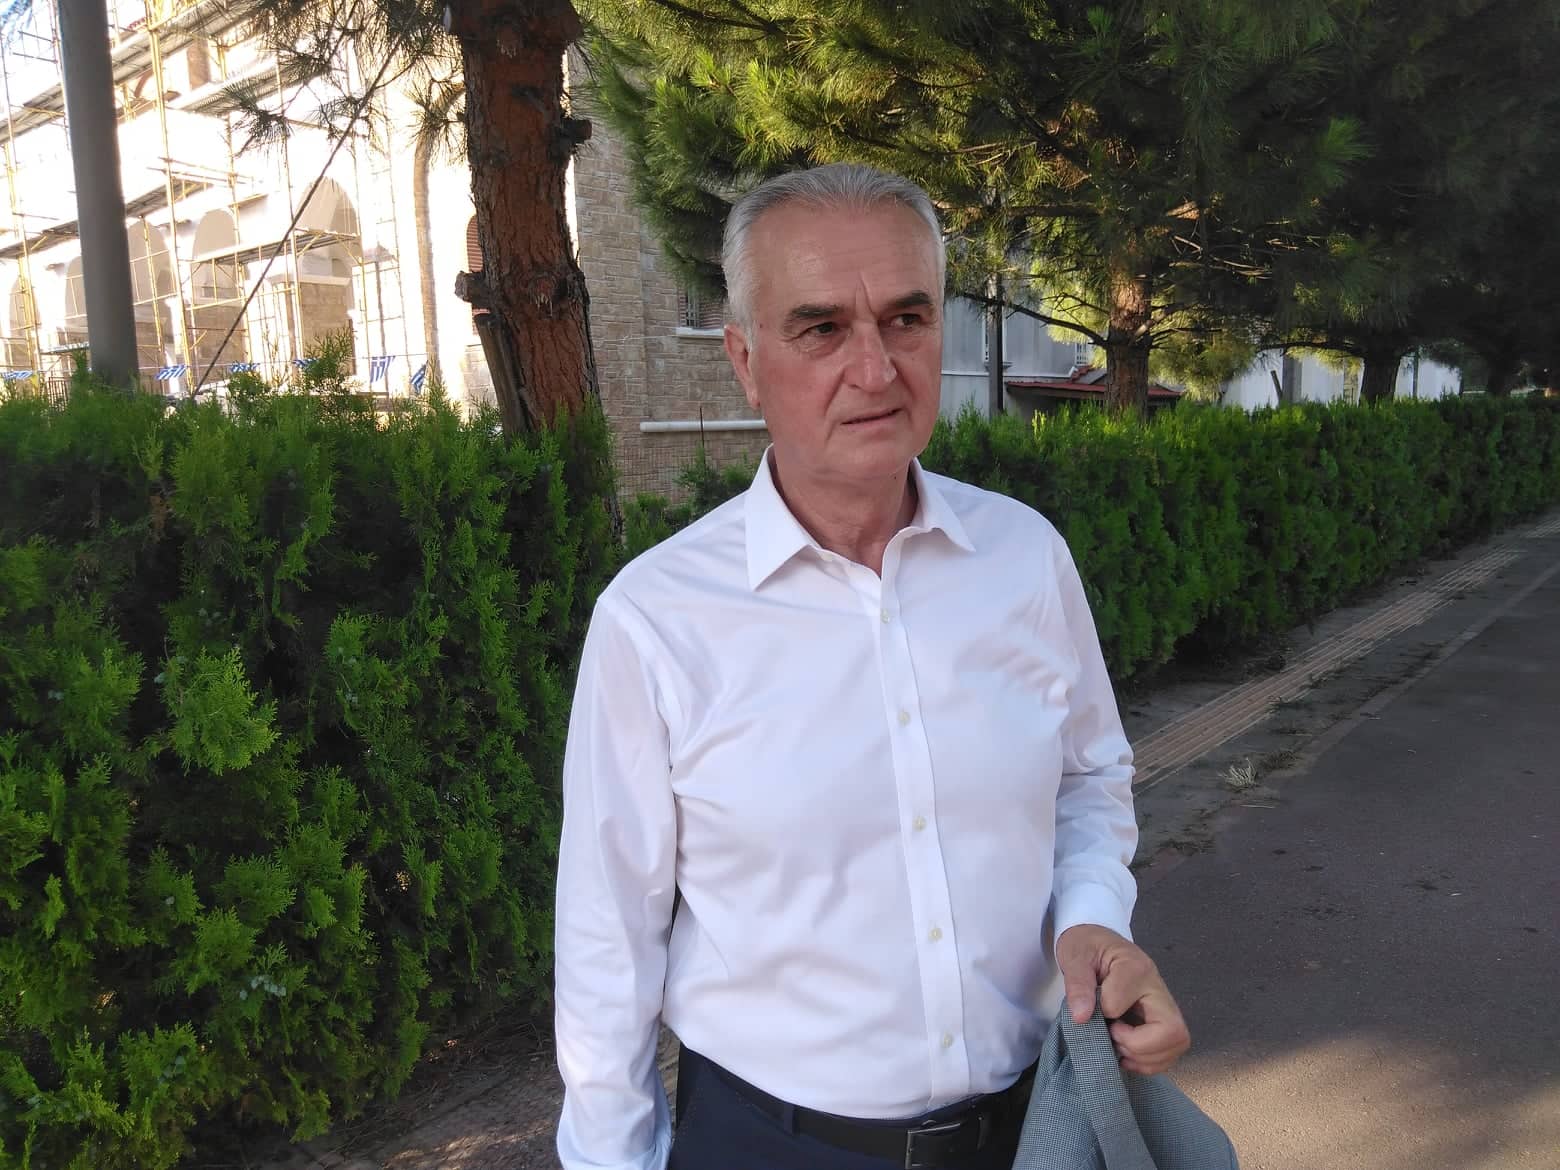 Σάββας Αναστασιάδης: “Ζησαμε κι εμείς τον λαϊκισμό το ΄15, όπως τώρα η Ιταλία”